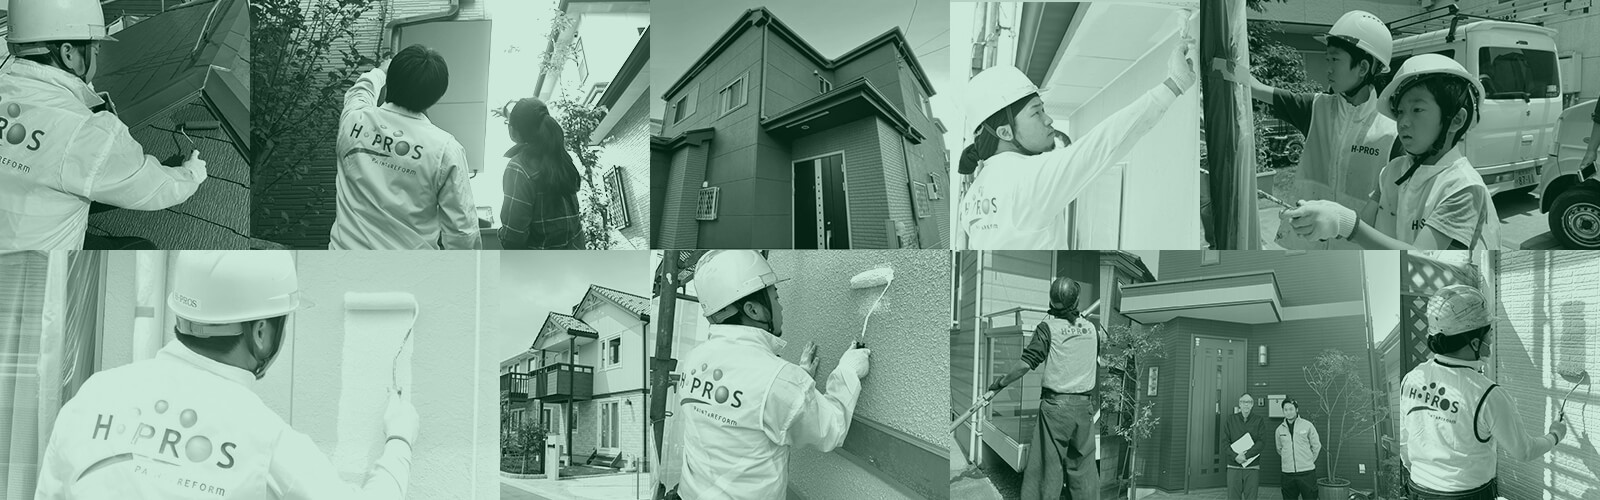 埼玉県 外壁塗装で使える助成金まとめ 市町村